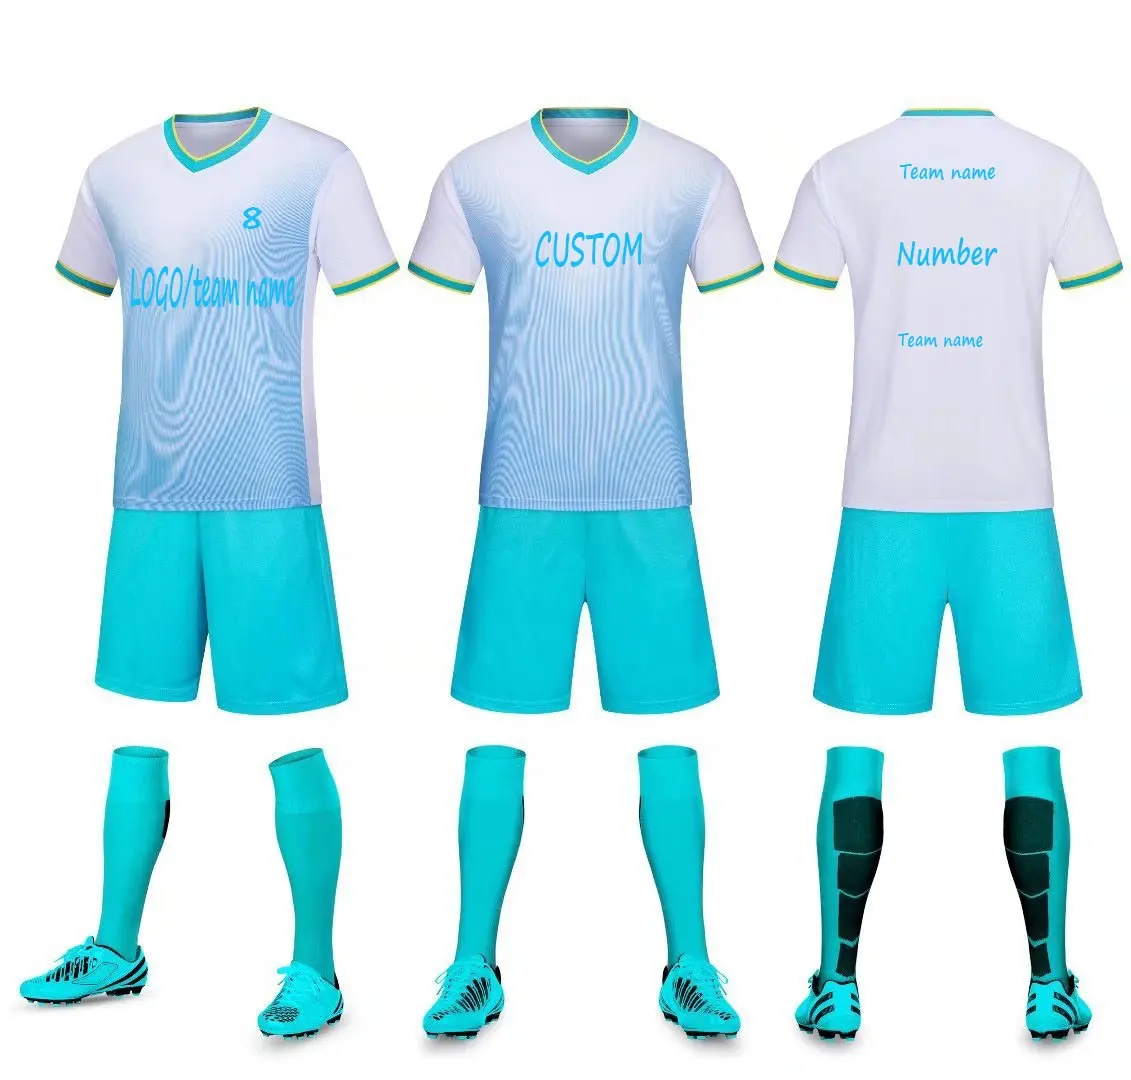 Uniformes de Club de l'équipe de Sublimation, maillots de Football deux pièces pour hommes, short personnalisé bleu et blanc, ensemble de maillot de Football unisexe